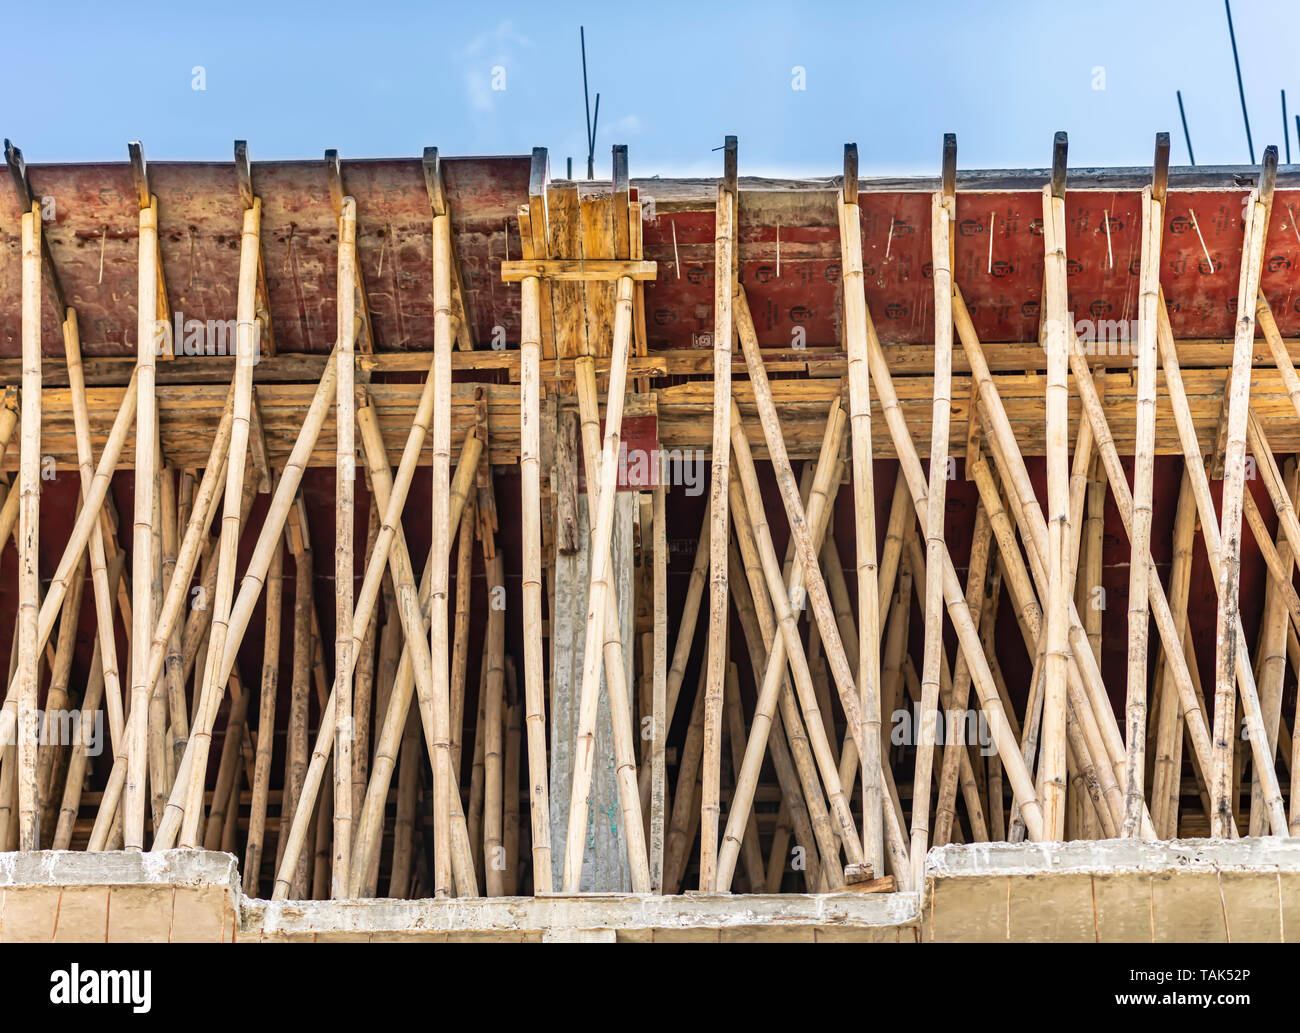 Una impalcatura di bambù essendo utilizzato per il supporto di un cemento rinforzato concreto soletta del tetto. Appena versato il tetto viene lasciato asciugare per circa 7 giorni. India. Foto Stock